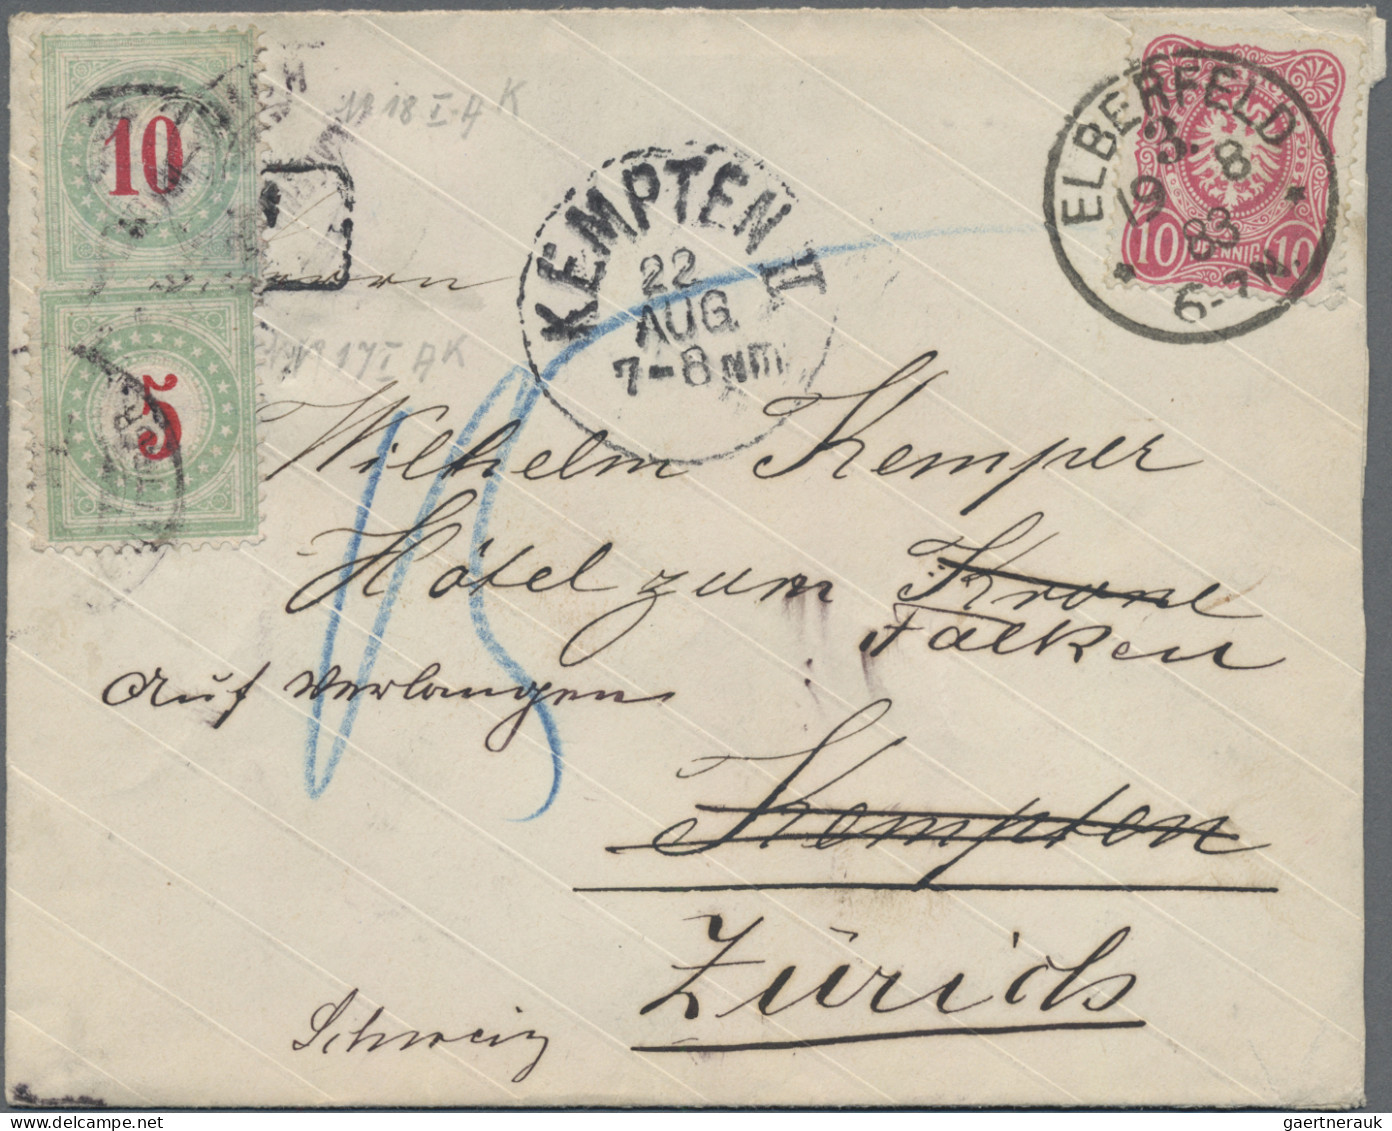 Schweiz - Portomarken: 1883-84 Vier ungenügend frankierte Briefe aus Elberfeld (